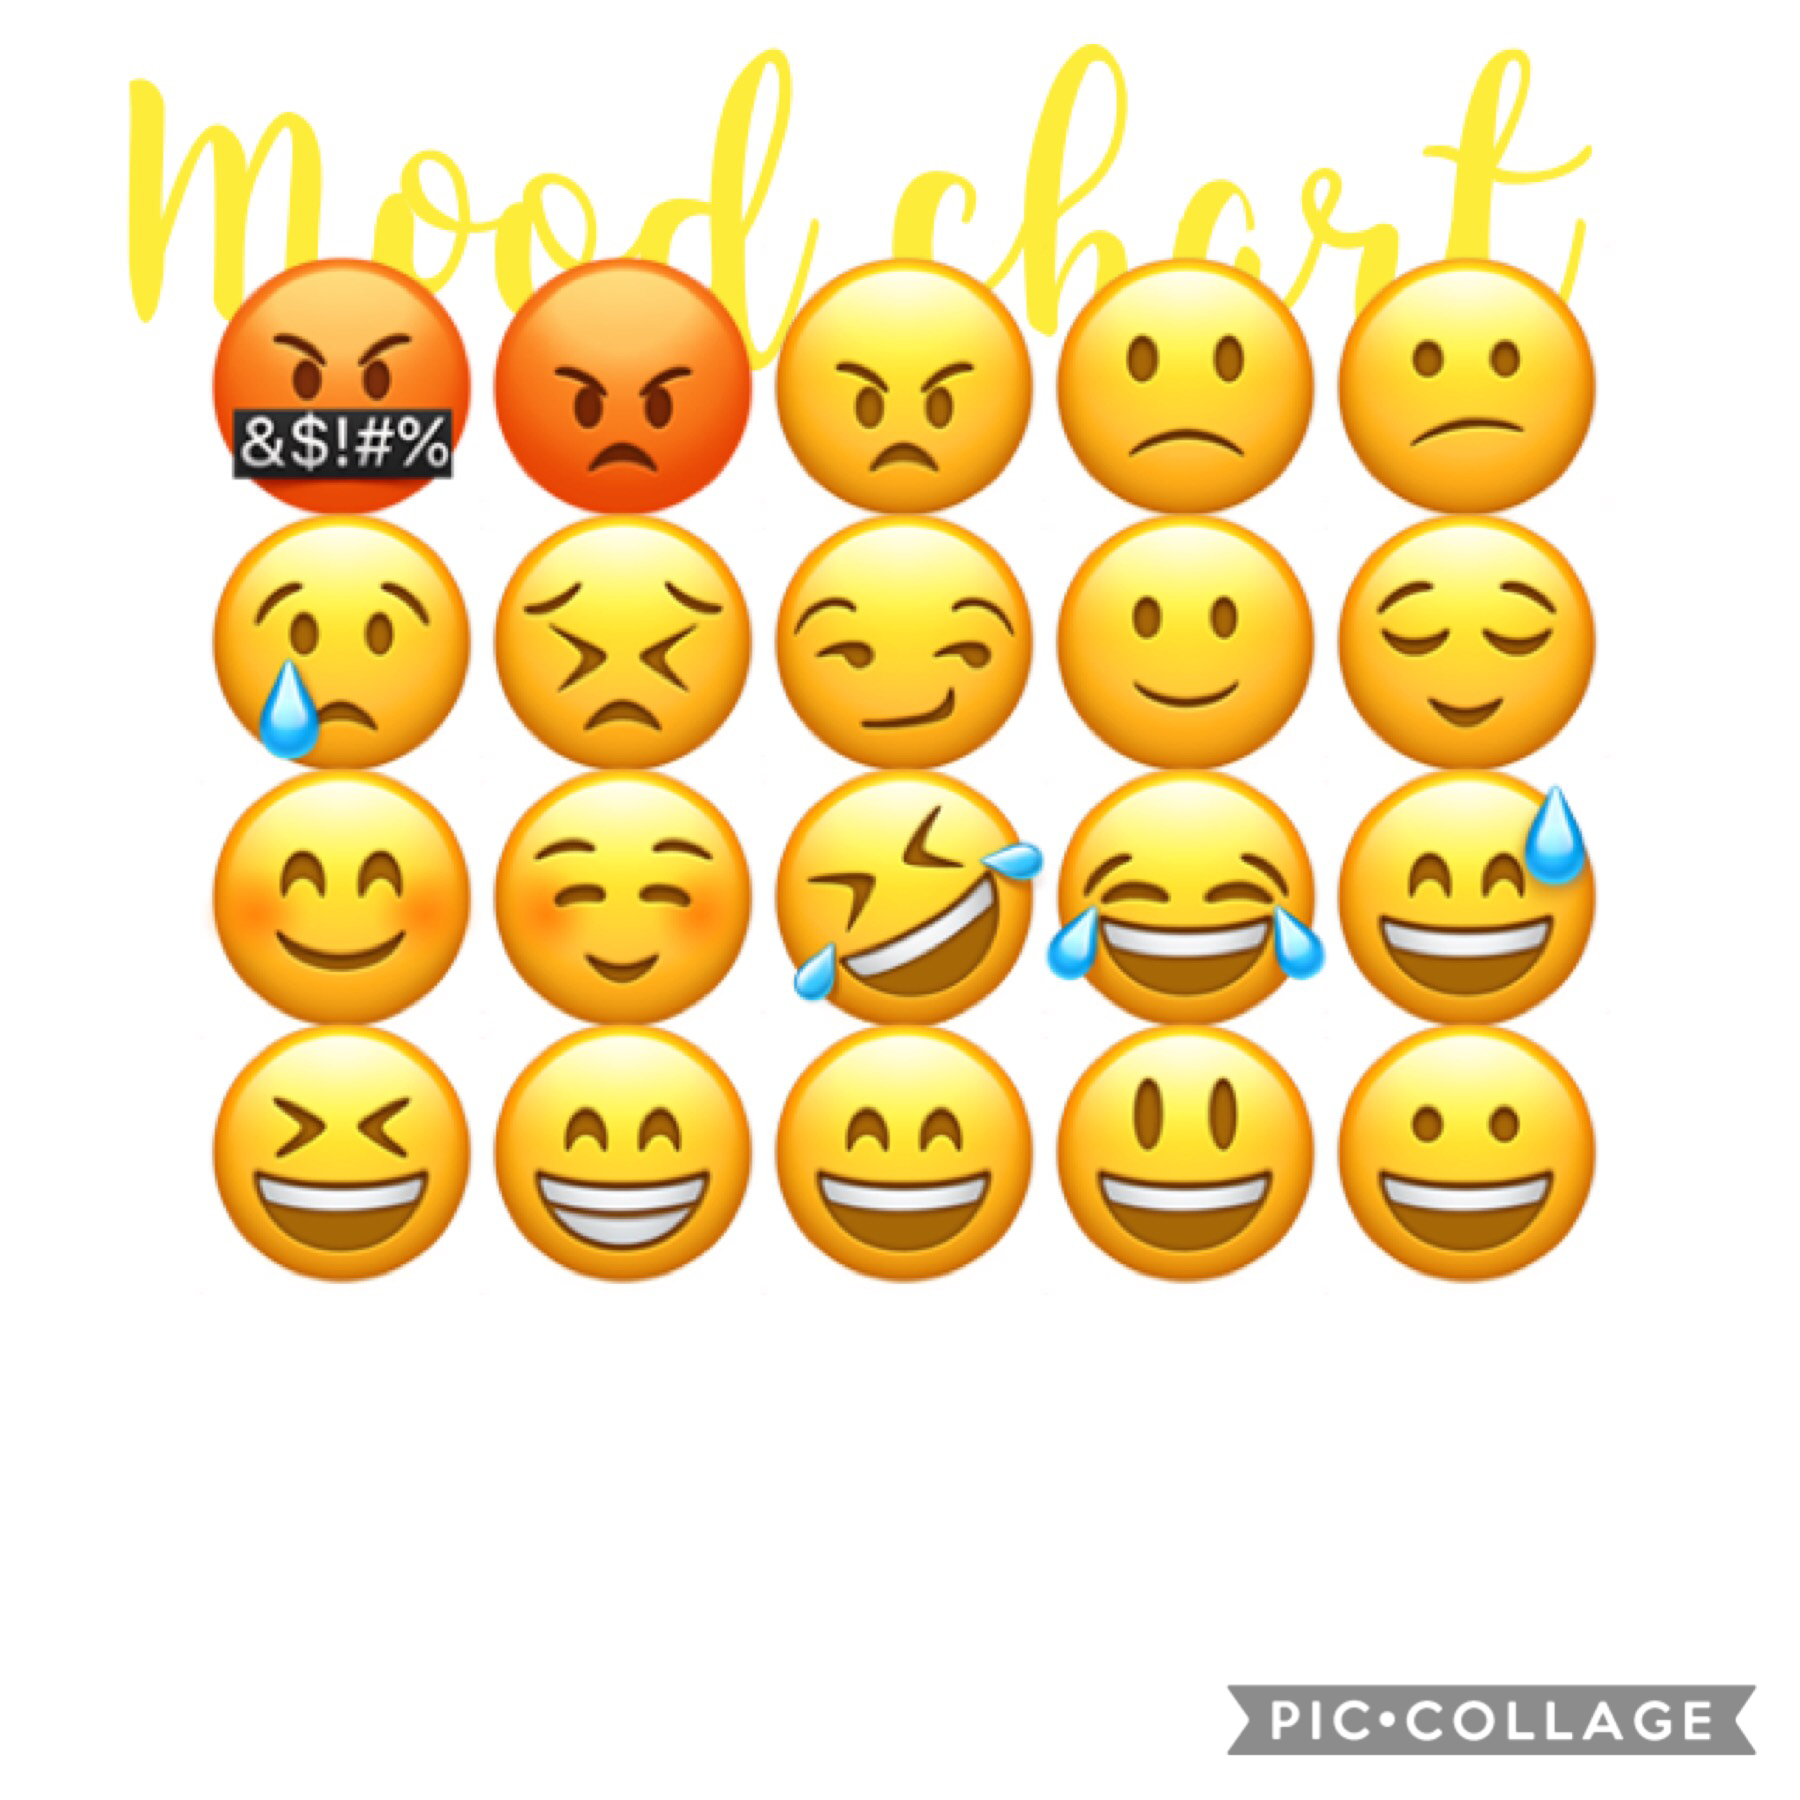 Mood chart